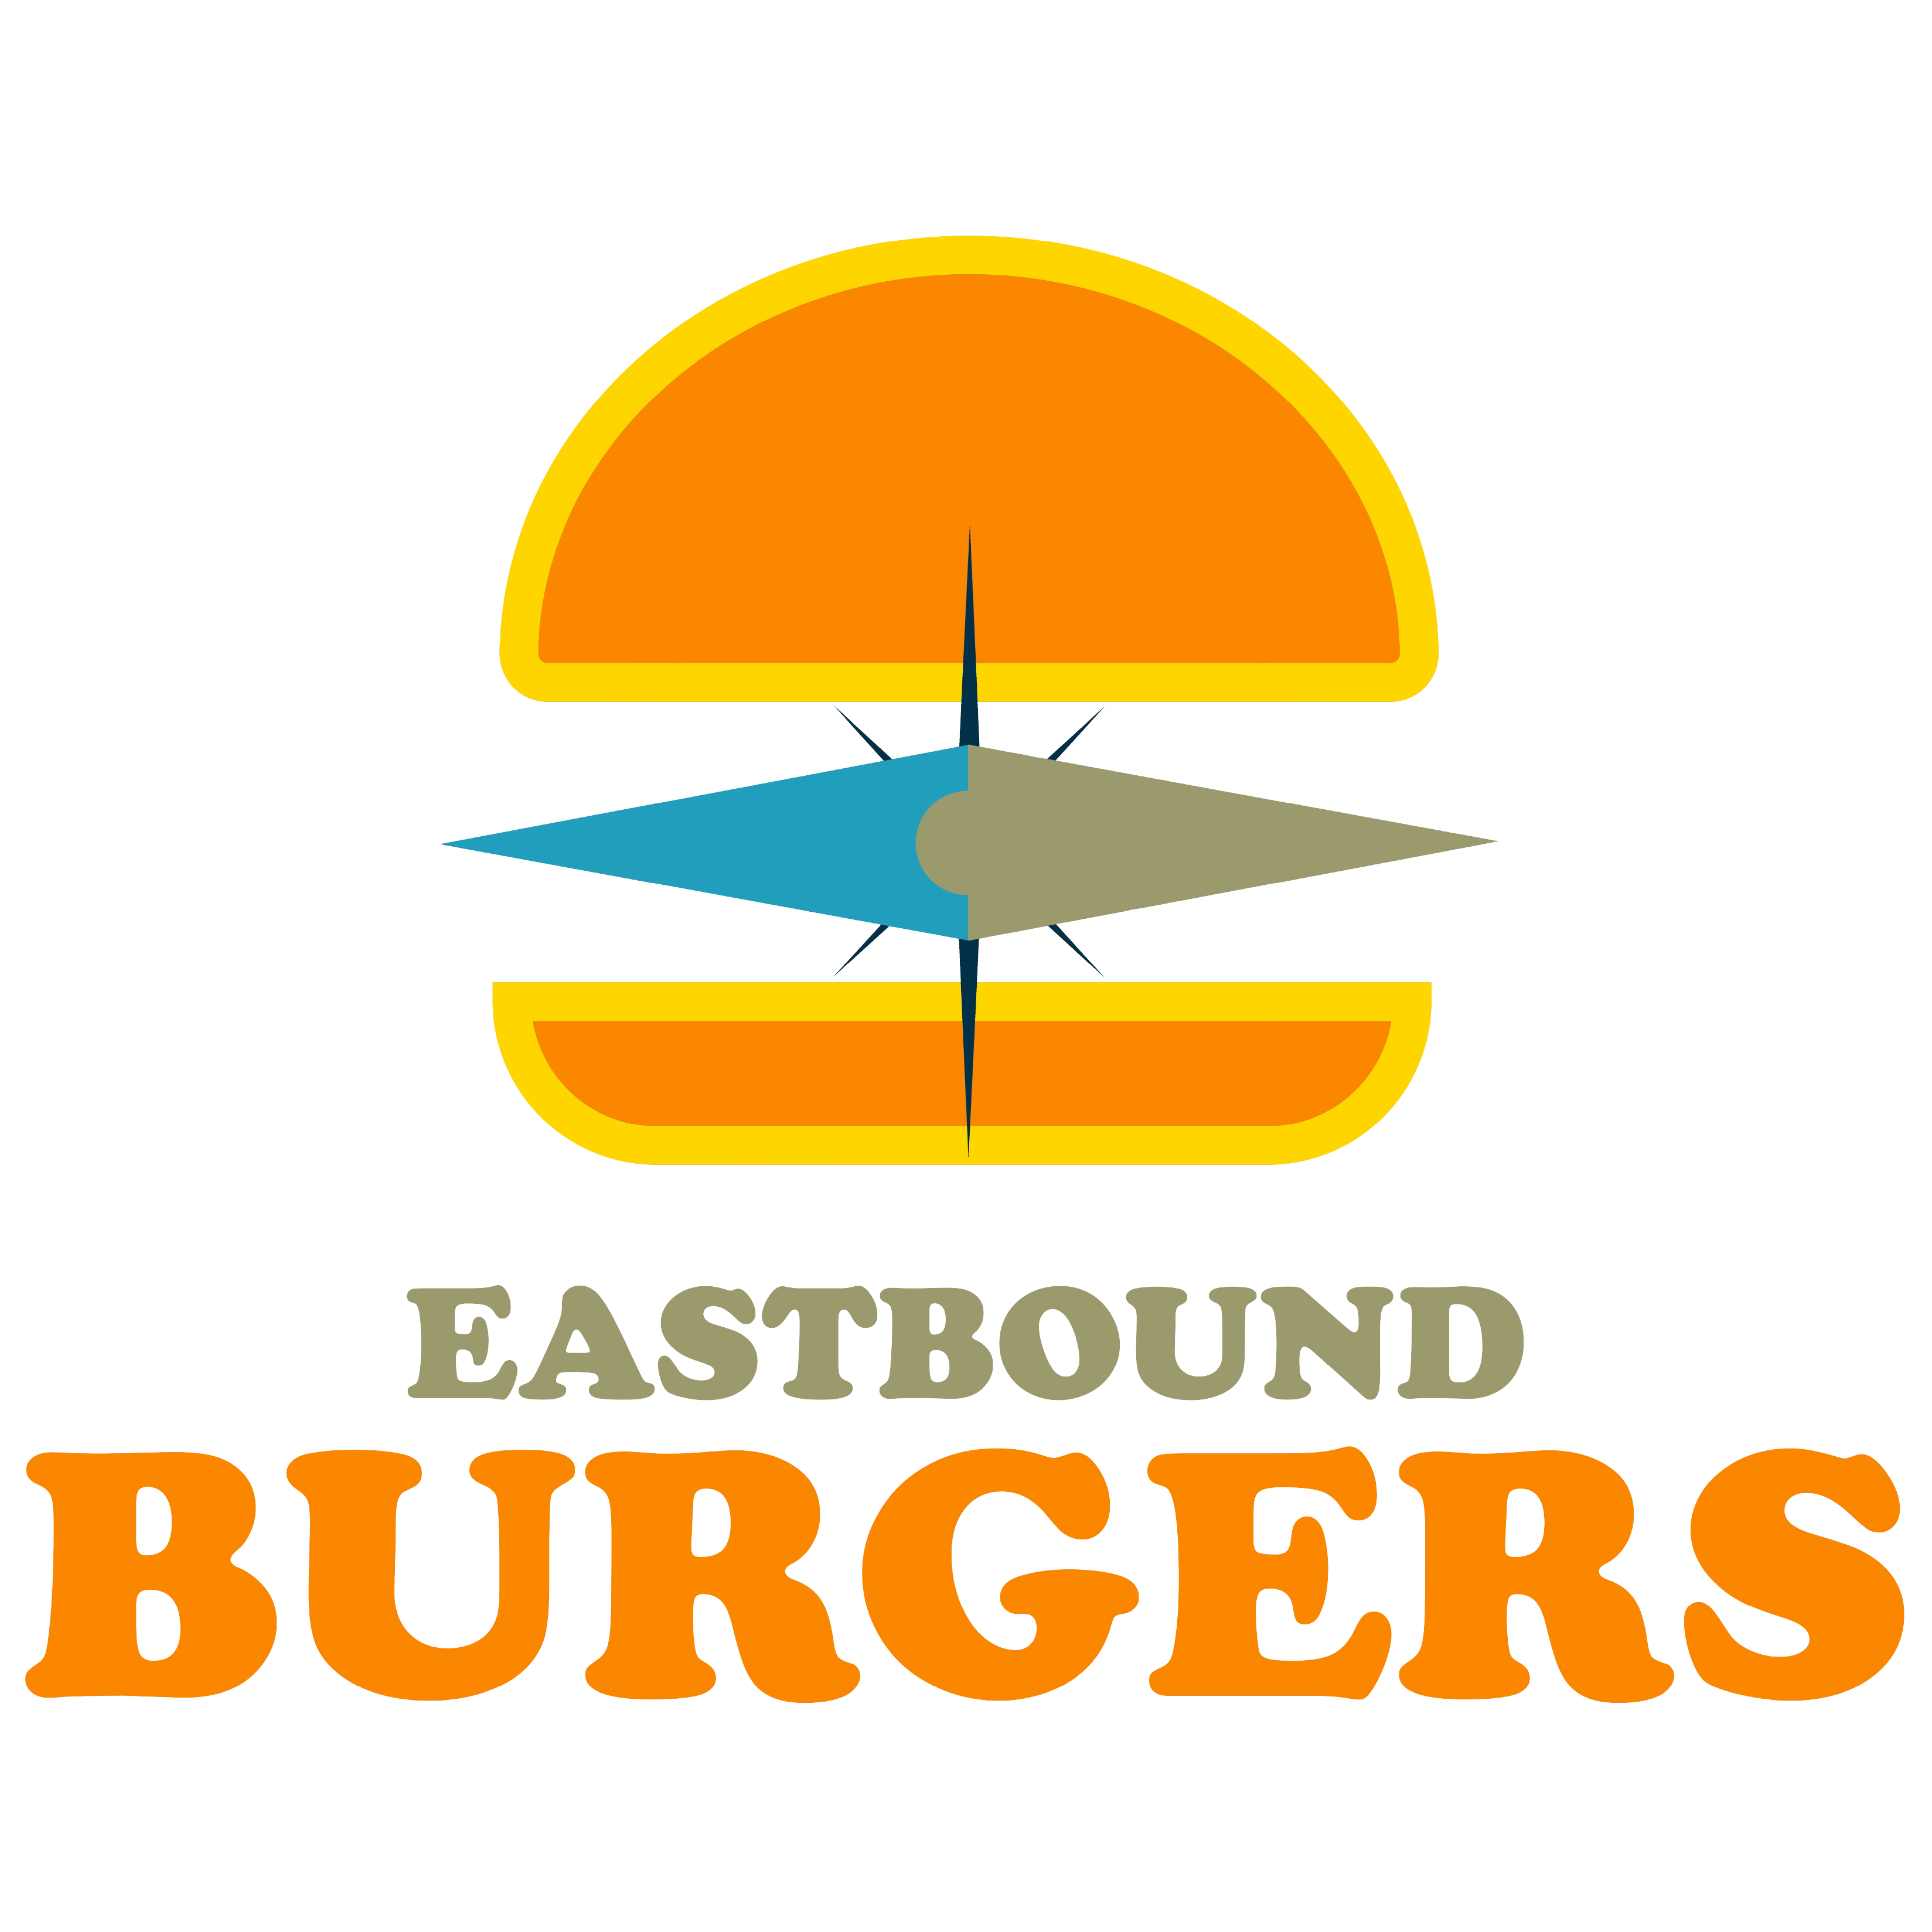 eastbound burgers app logo